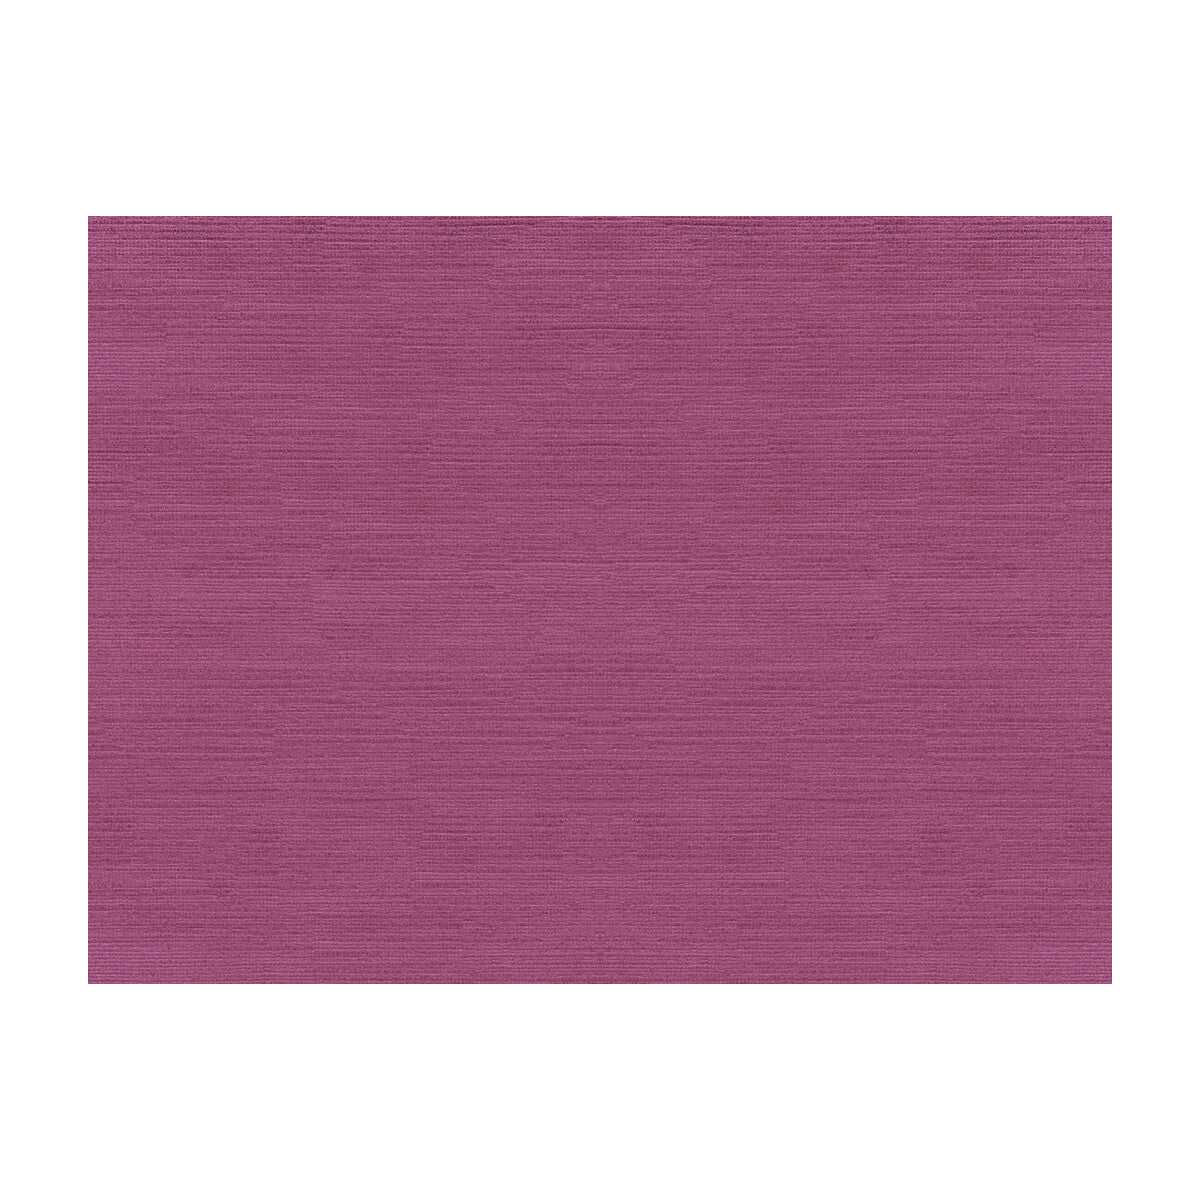 Quillan Velvet fabric in violet color - pattern BR-89777.730.0 - by Brunschwig &amp; Fils